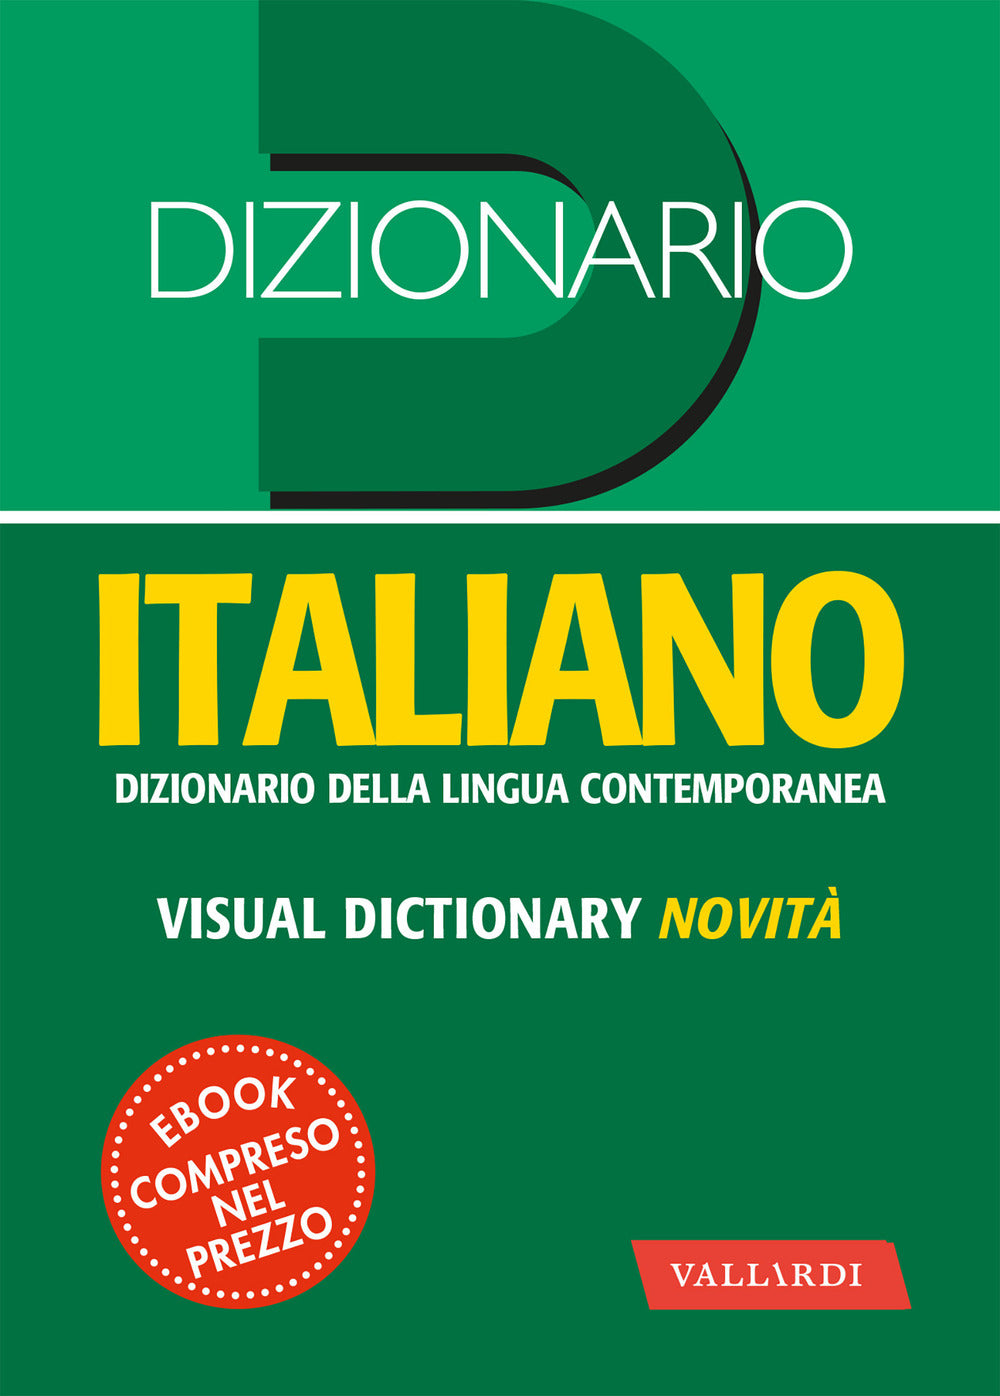 Dizionario italiano tascabile